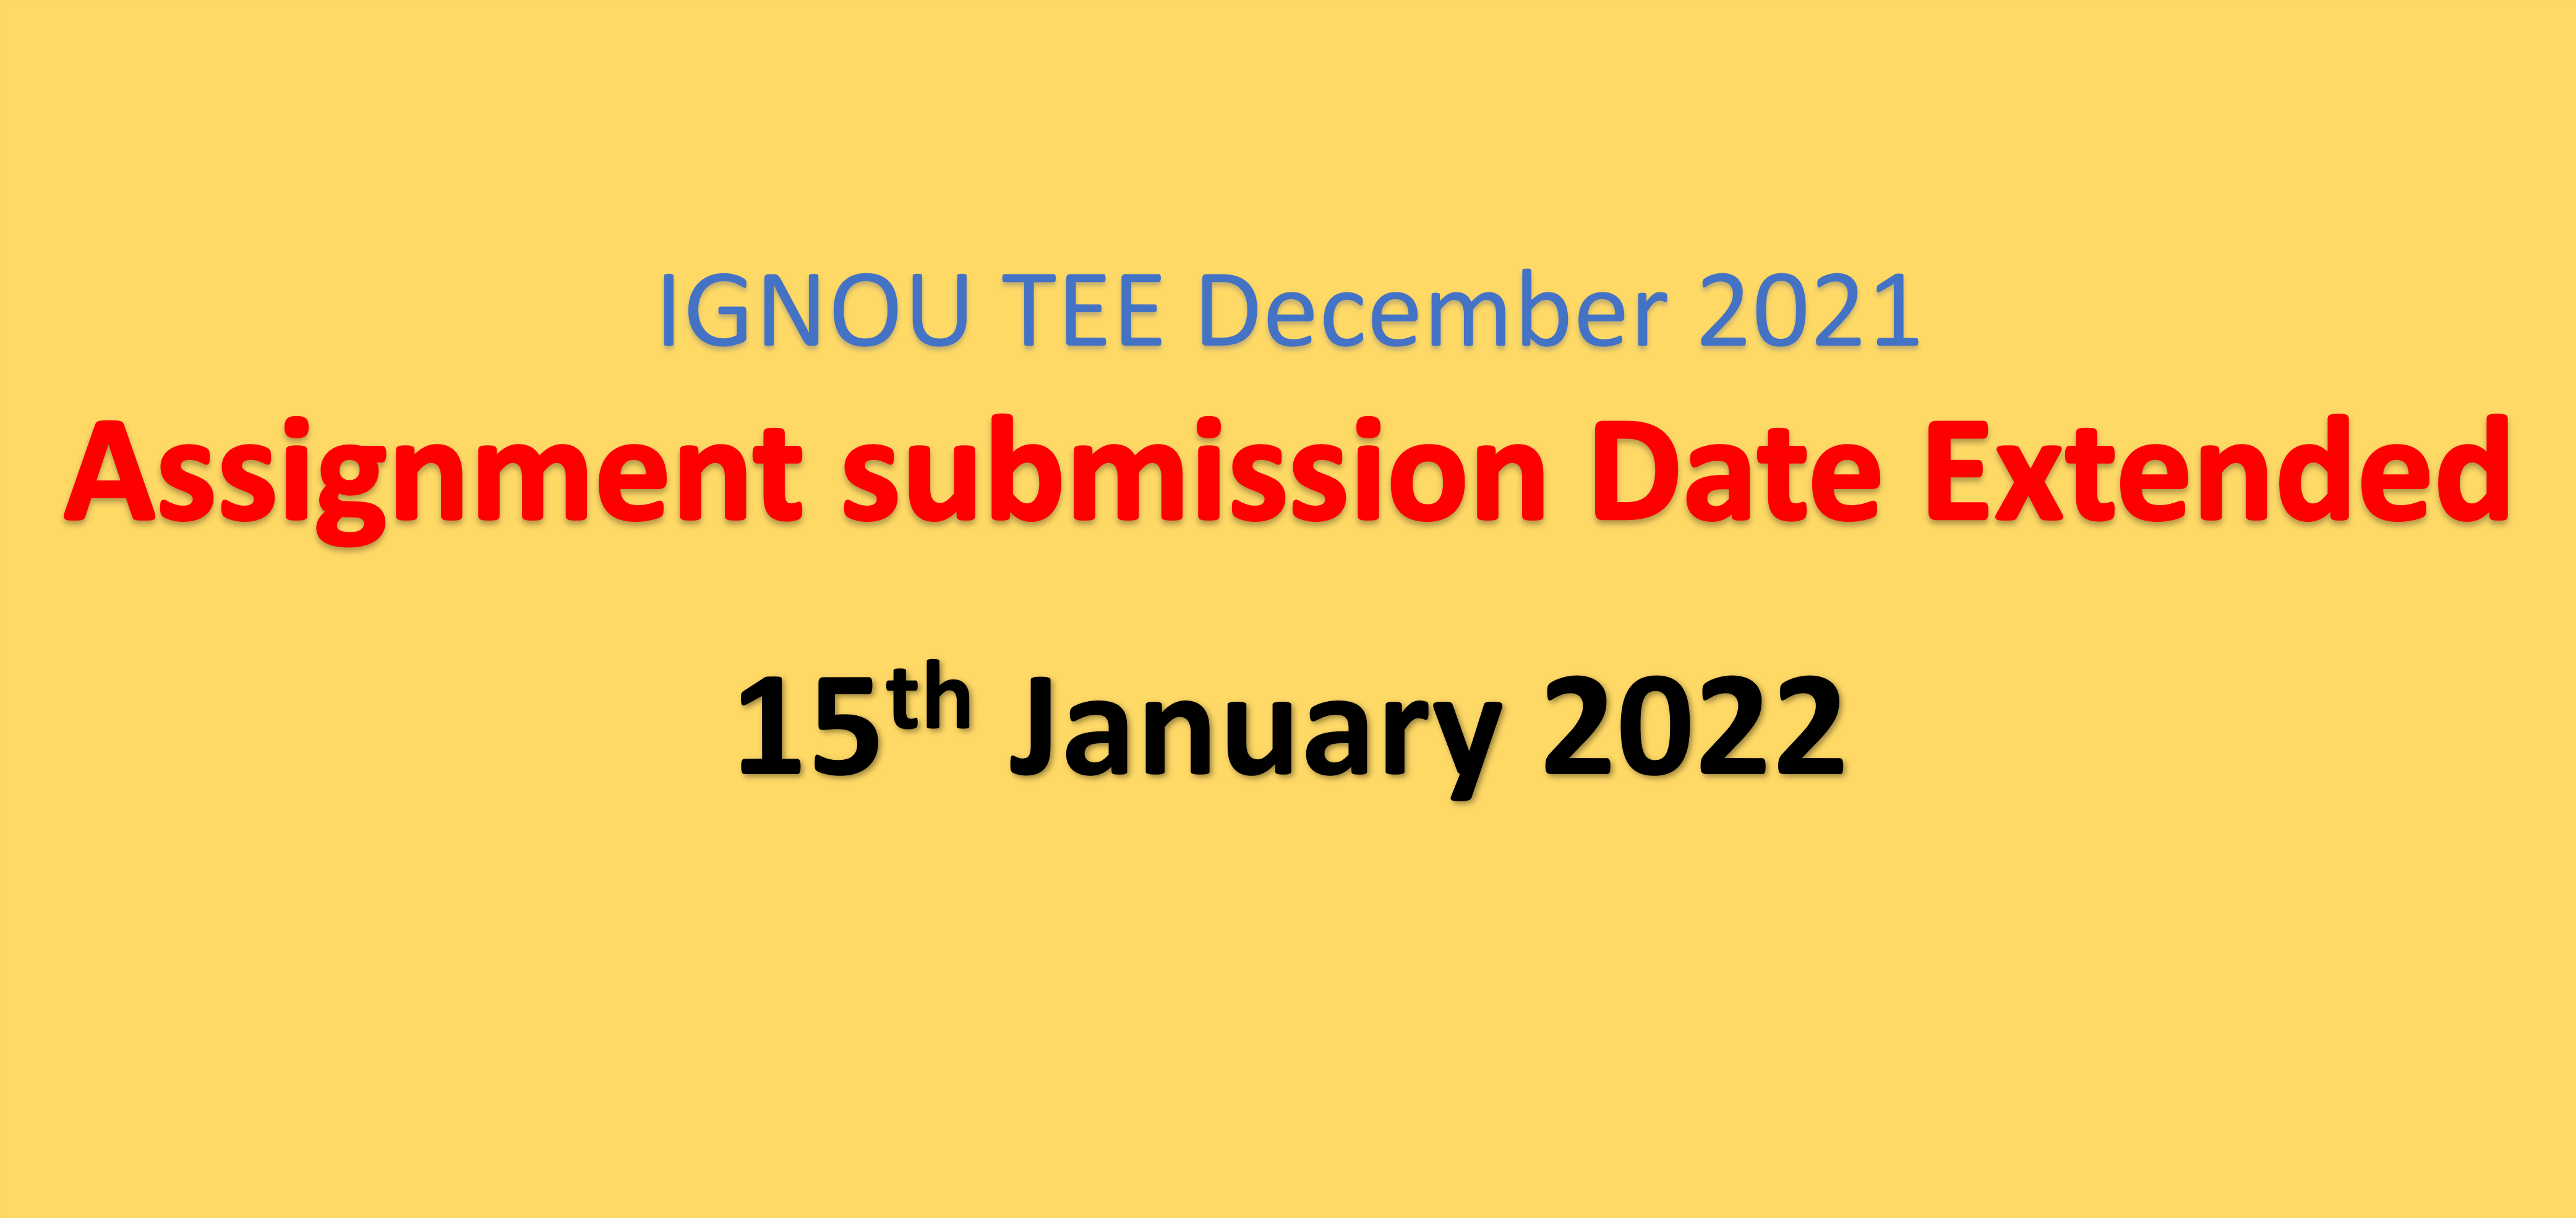 इग्नू TEE दिसंबर 2021 के असाइनमेंट सबमिशन की डेट बढ़ी - नई डेट 15 जनवरी 2022